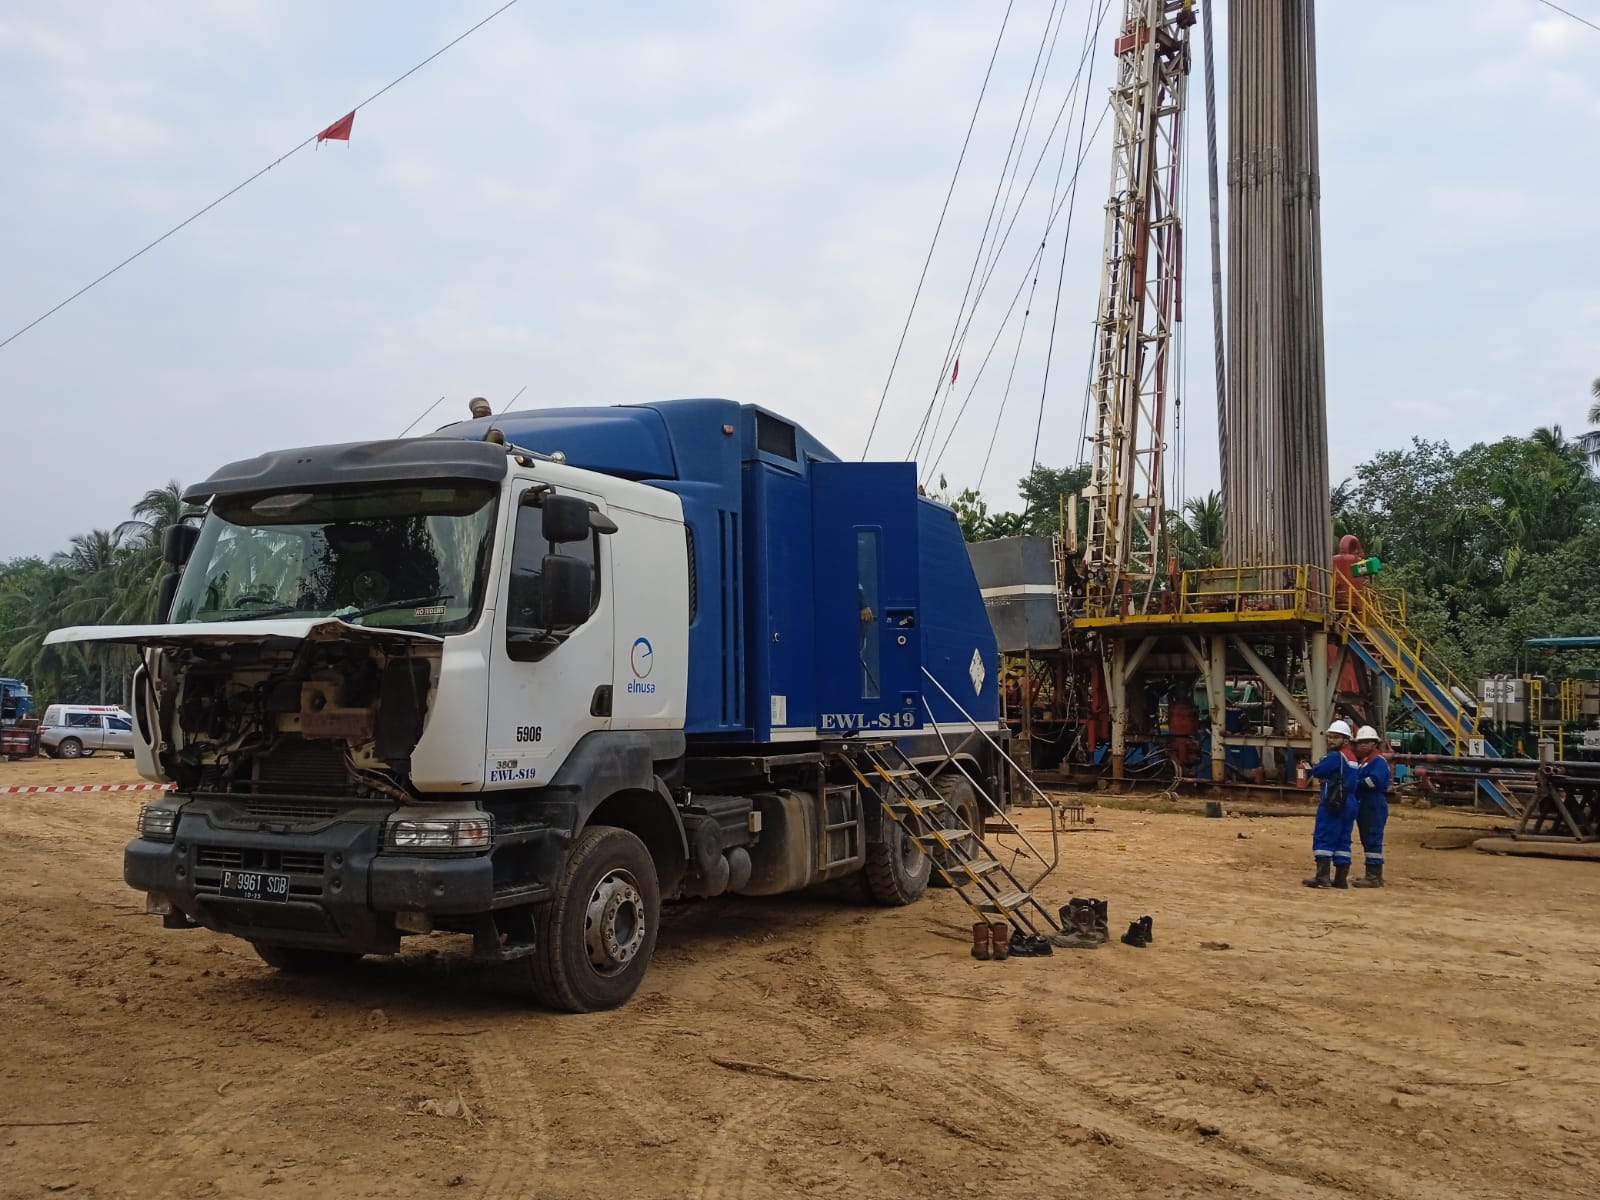 Kiprah Elnusa dalam Meningkatkan Produksi Gas di Prabumulih Field